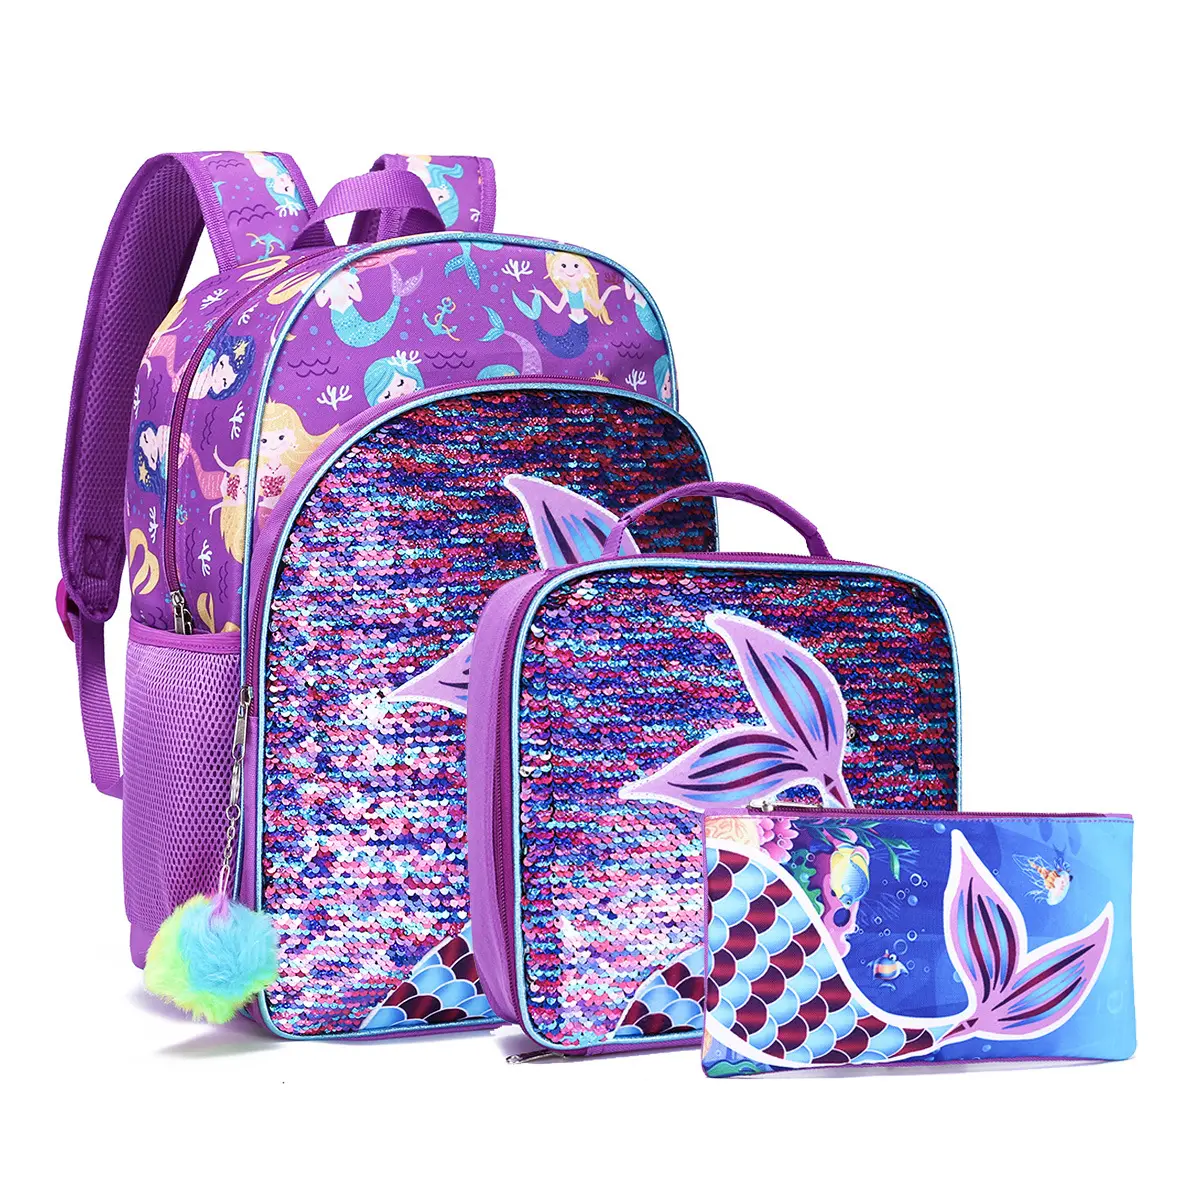 girls purple mermaid school backpack oem printed sequin 3 set school bag kids backpack with lunch bag pencil bag